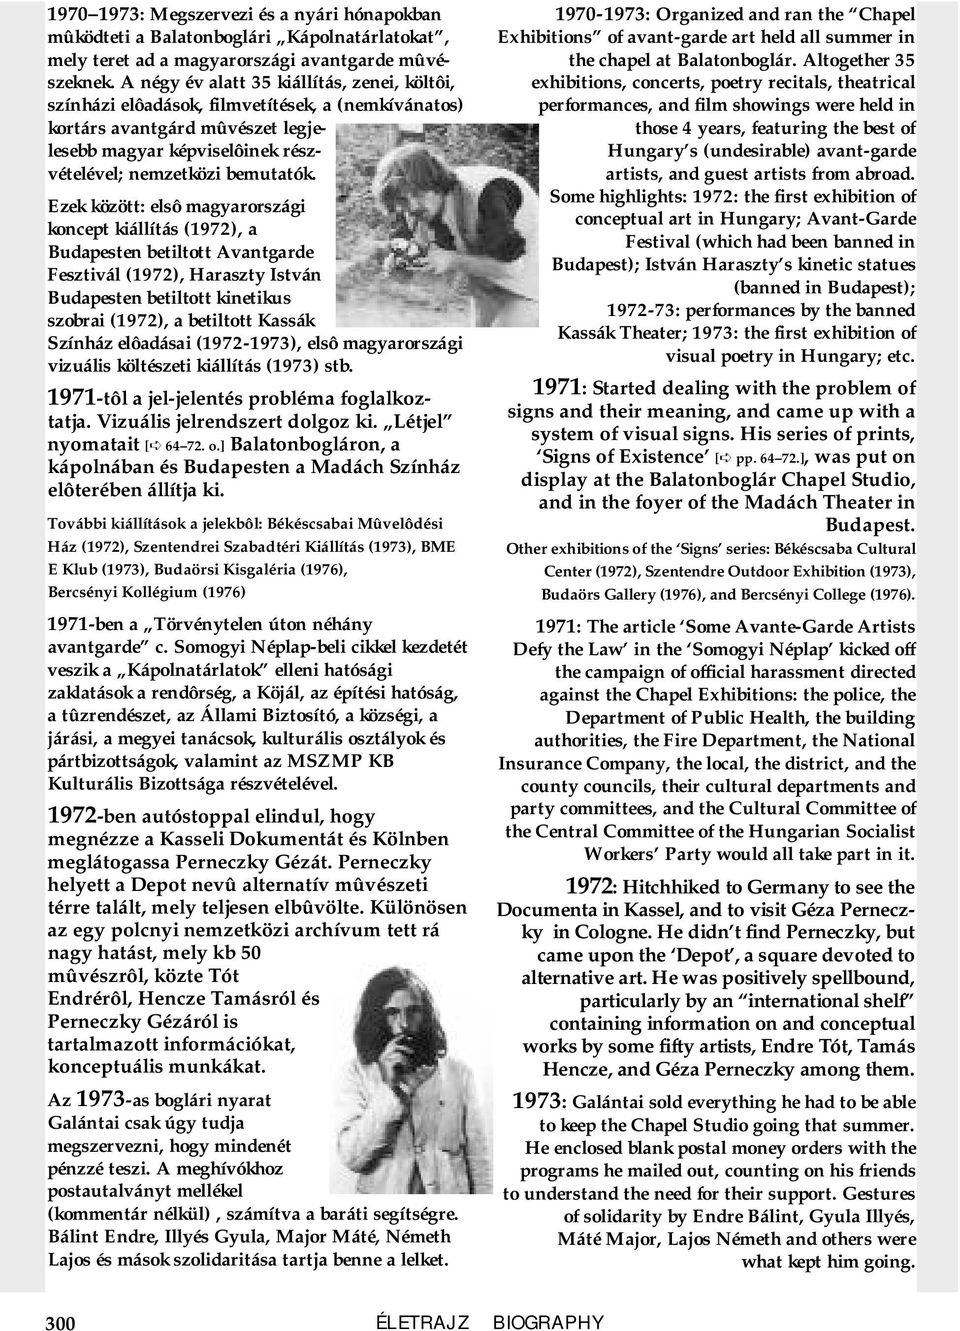 Ezek között: elsô magyarországi koncept kiállítás (1972), a Budapesten betiltott Avantgarde Fesztivál (1972), Haraszty István Budapesten betiltott kinetikus szobrai (1972), a betiltott Kassák Színház